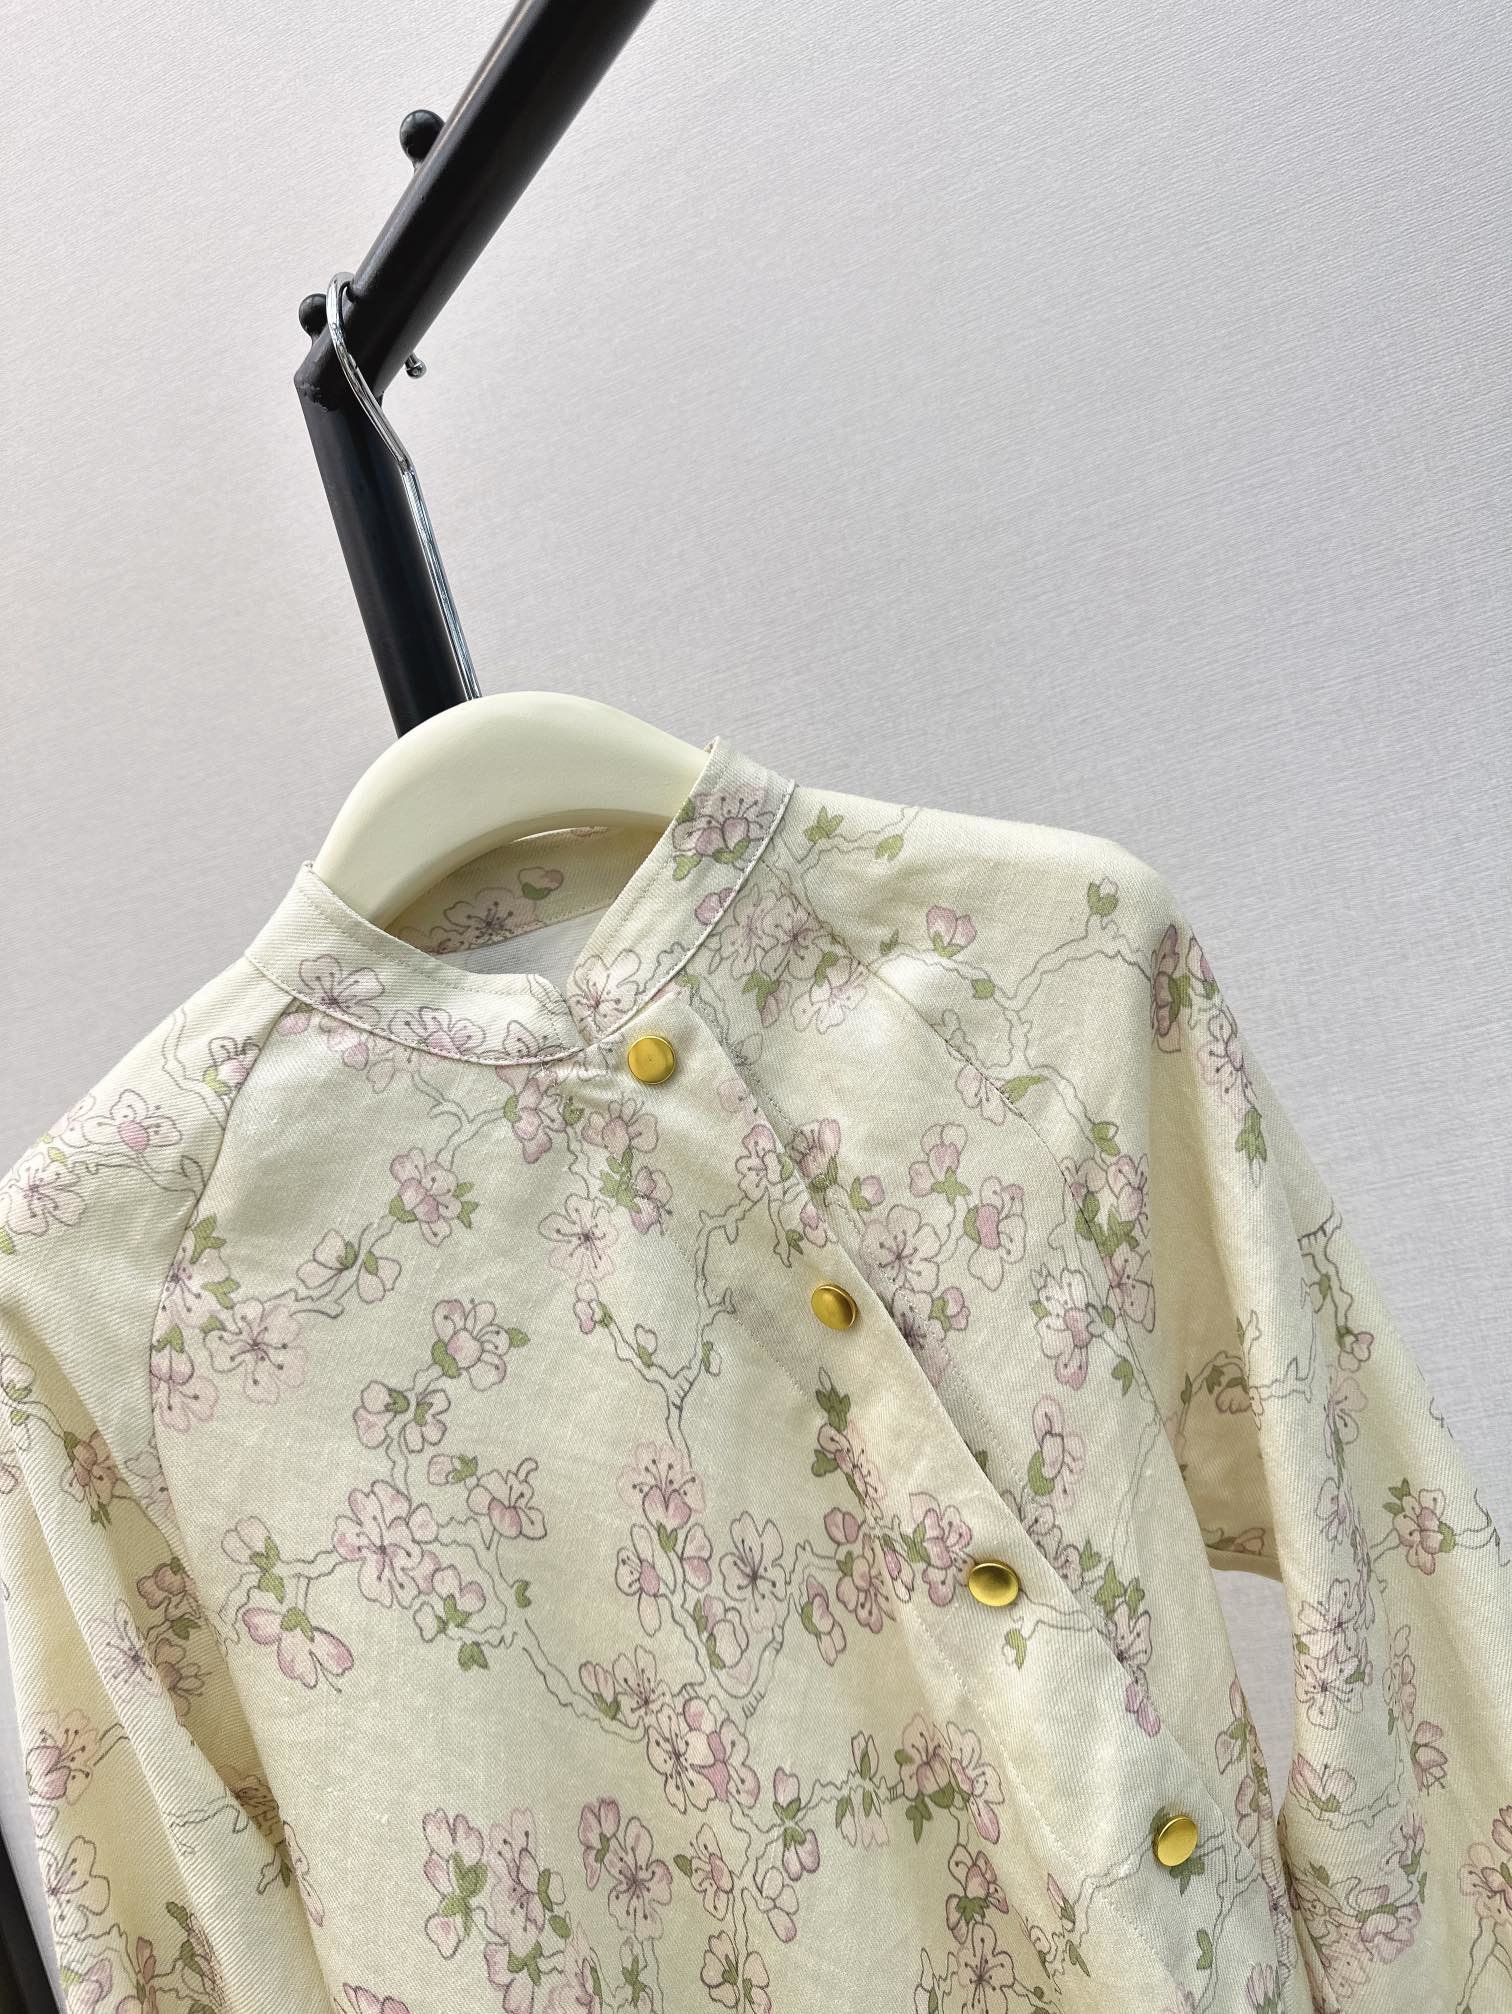 新中式24Ss春夏最新款今年流行的新中式设计感印花衬衫采用立体满身小碎花太美了精致优雅细节感在线浓浓的新